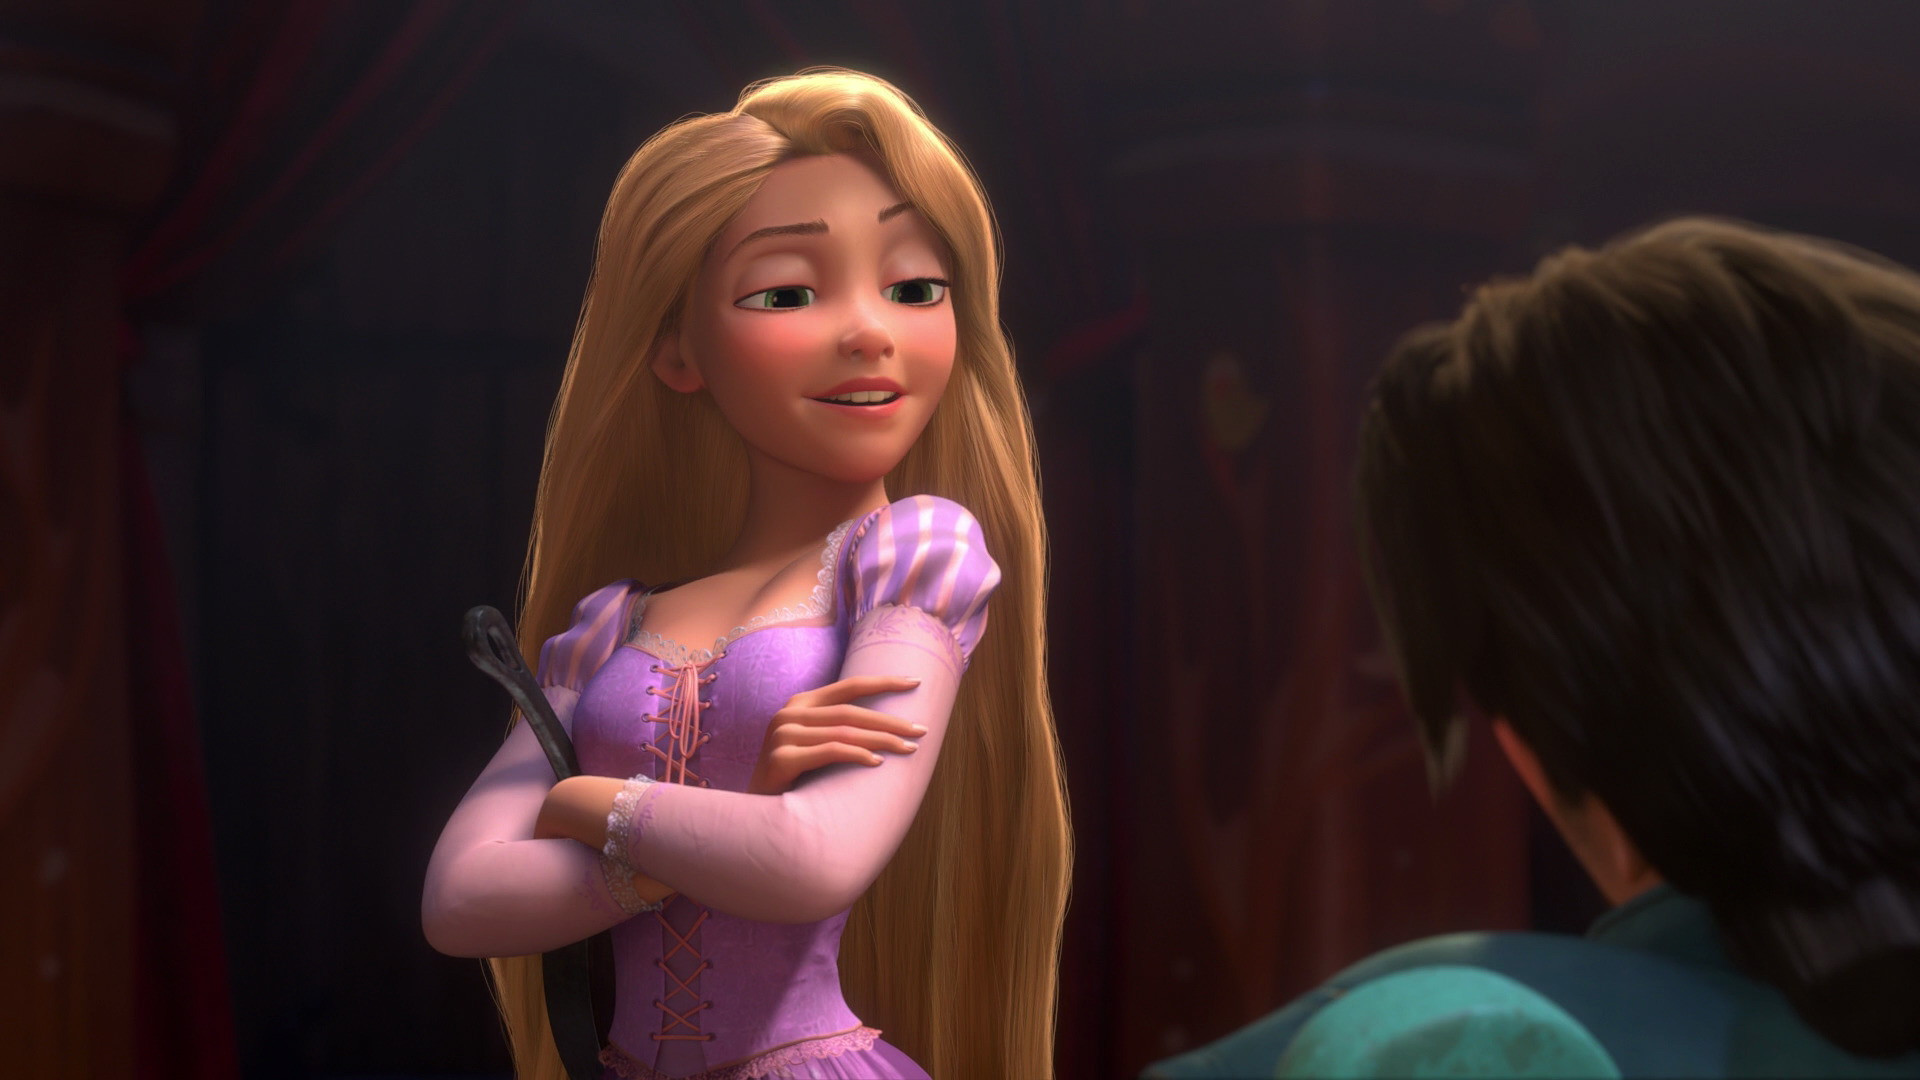 princess rapunzel images Princess Rapunzel – Meet Flynn Rider HD wallpaper  and background photos